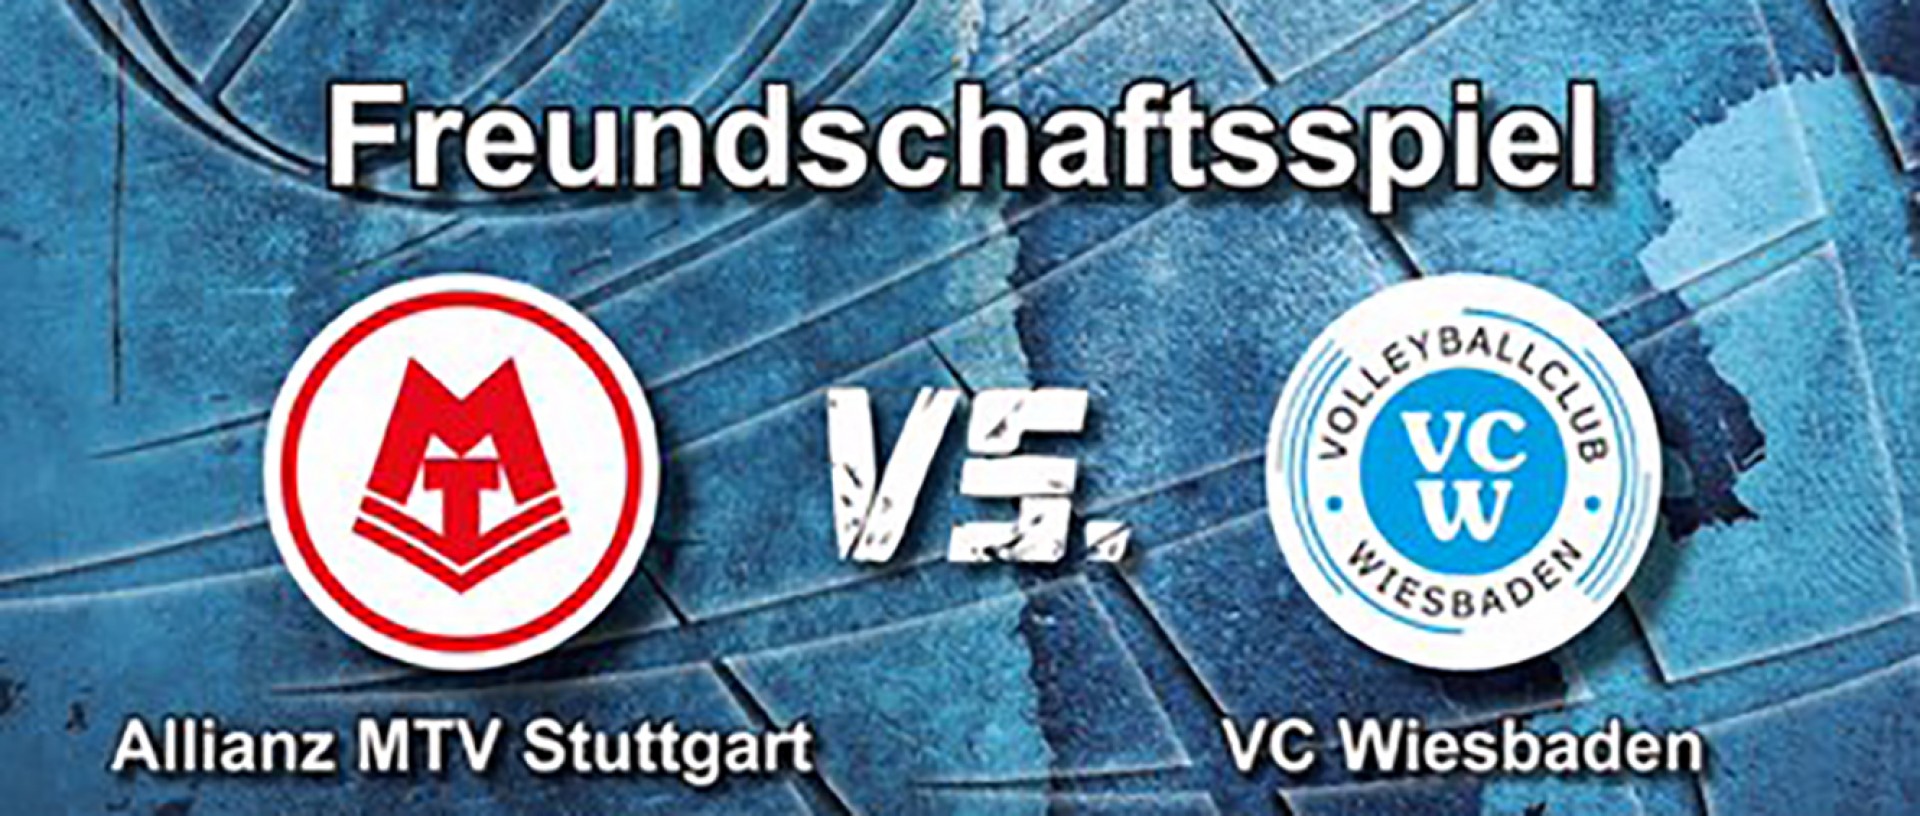 Allianz MTV Stuttgart und der 1. VC Wiesbaden veranstalten am 7.9. ein Freundschaftsspiel in Herxheim.